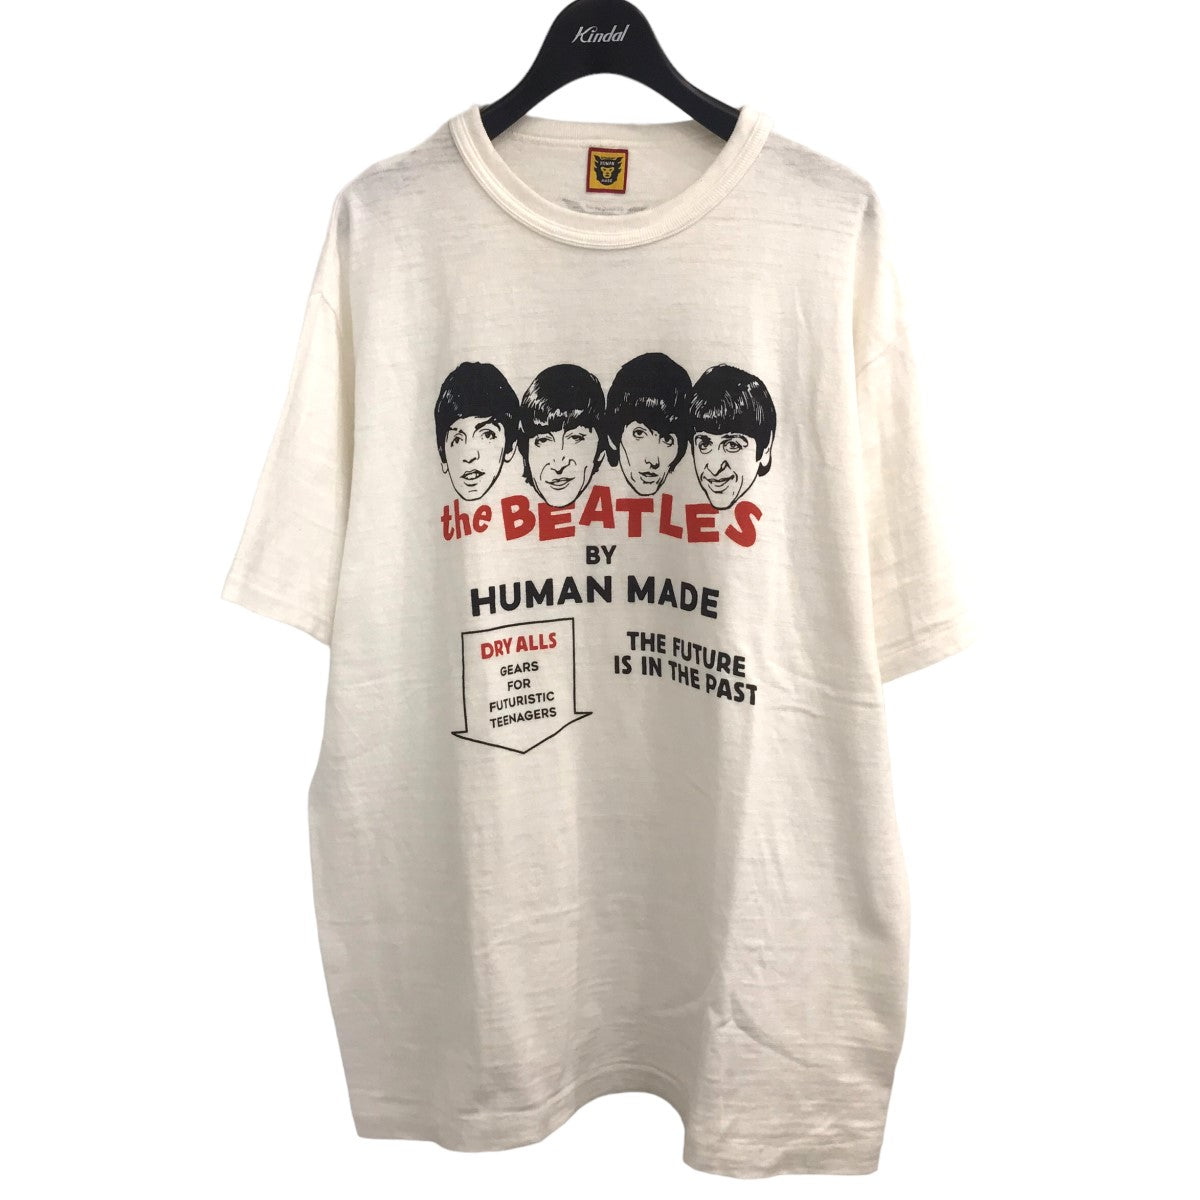 HUMAN MADE(ヒューマンメイド) ビートルズTシャツ ホワイト サイズ 13 